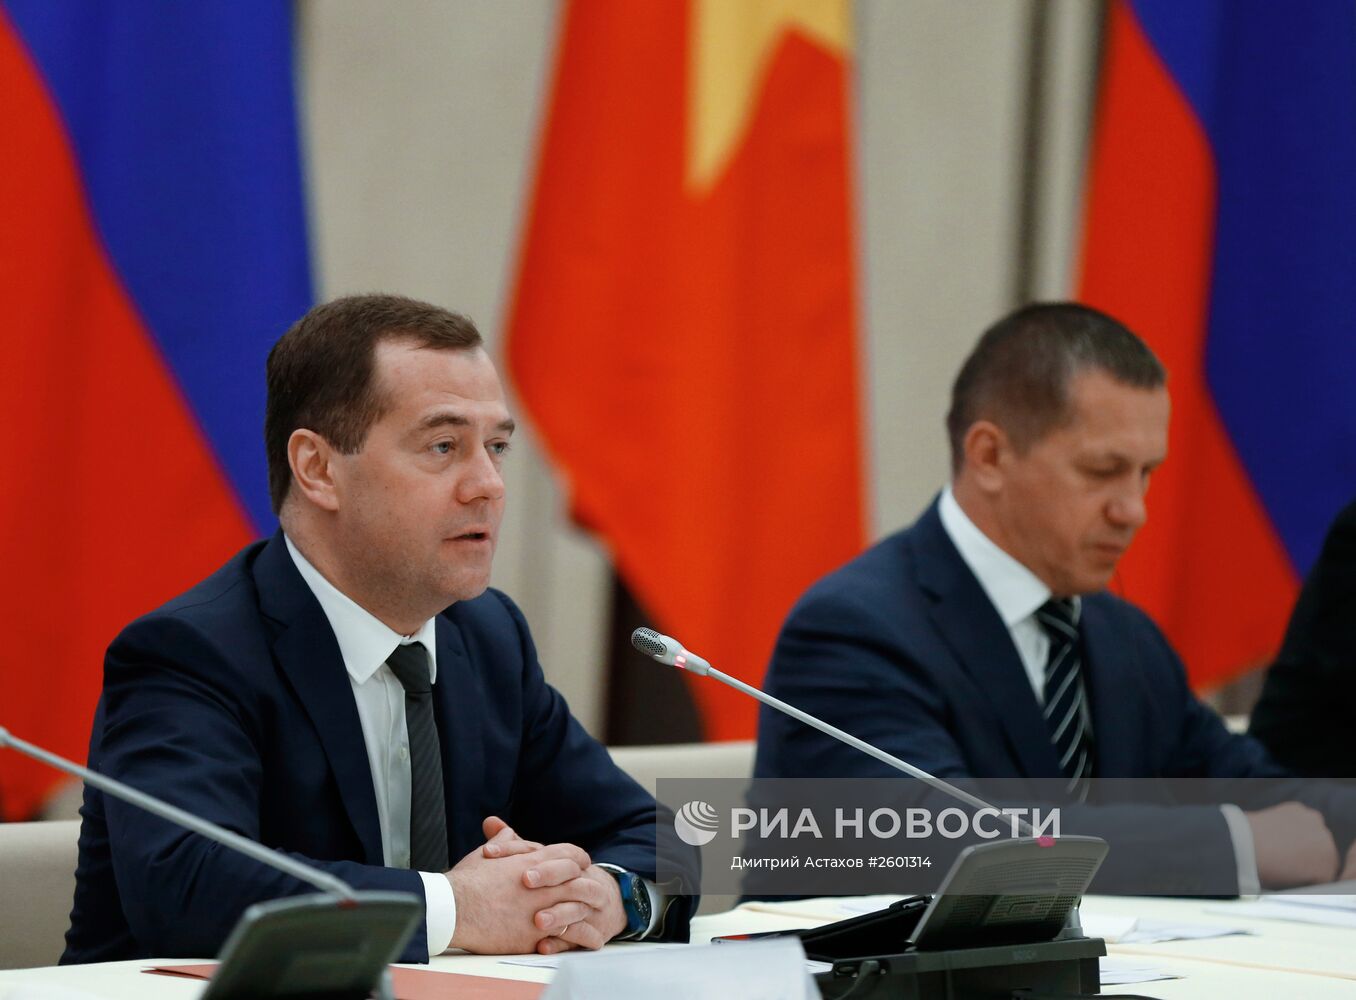 Официальный визит премьер-министра Д.Медведева во Вьетнам. День второй